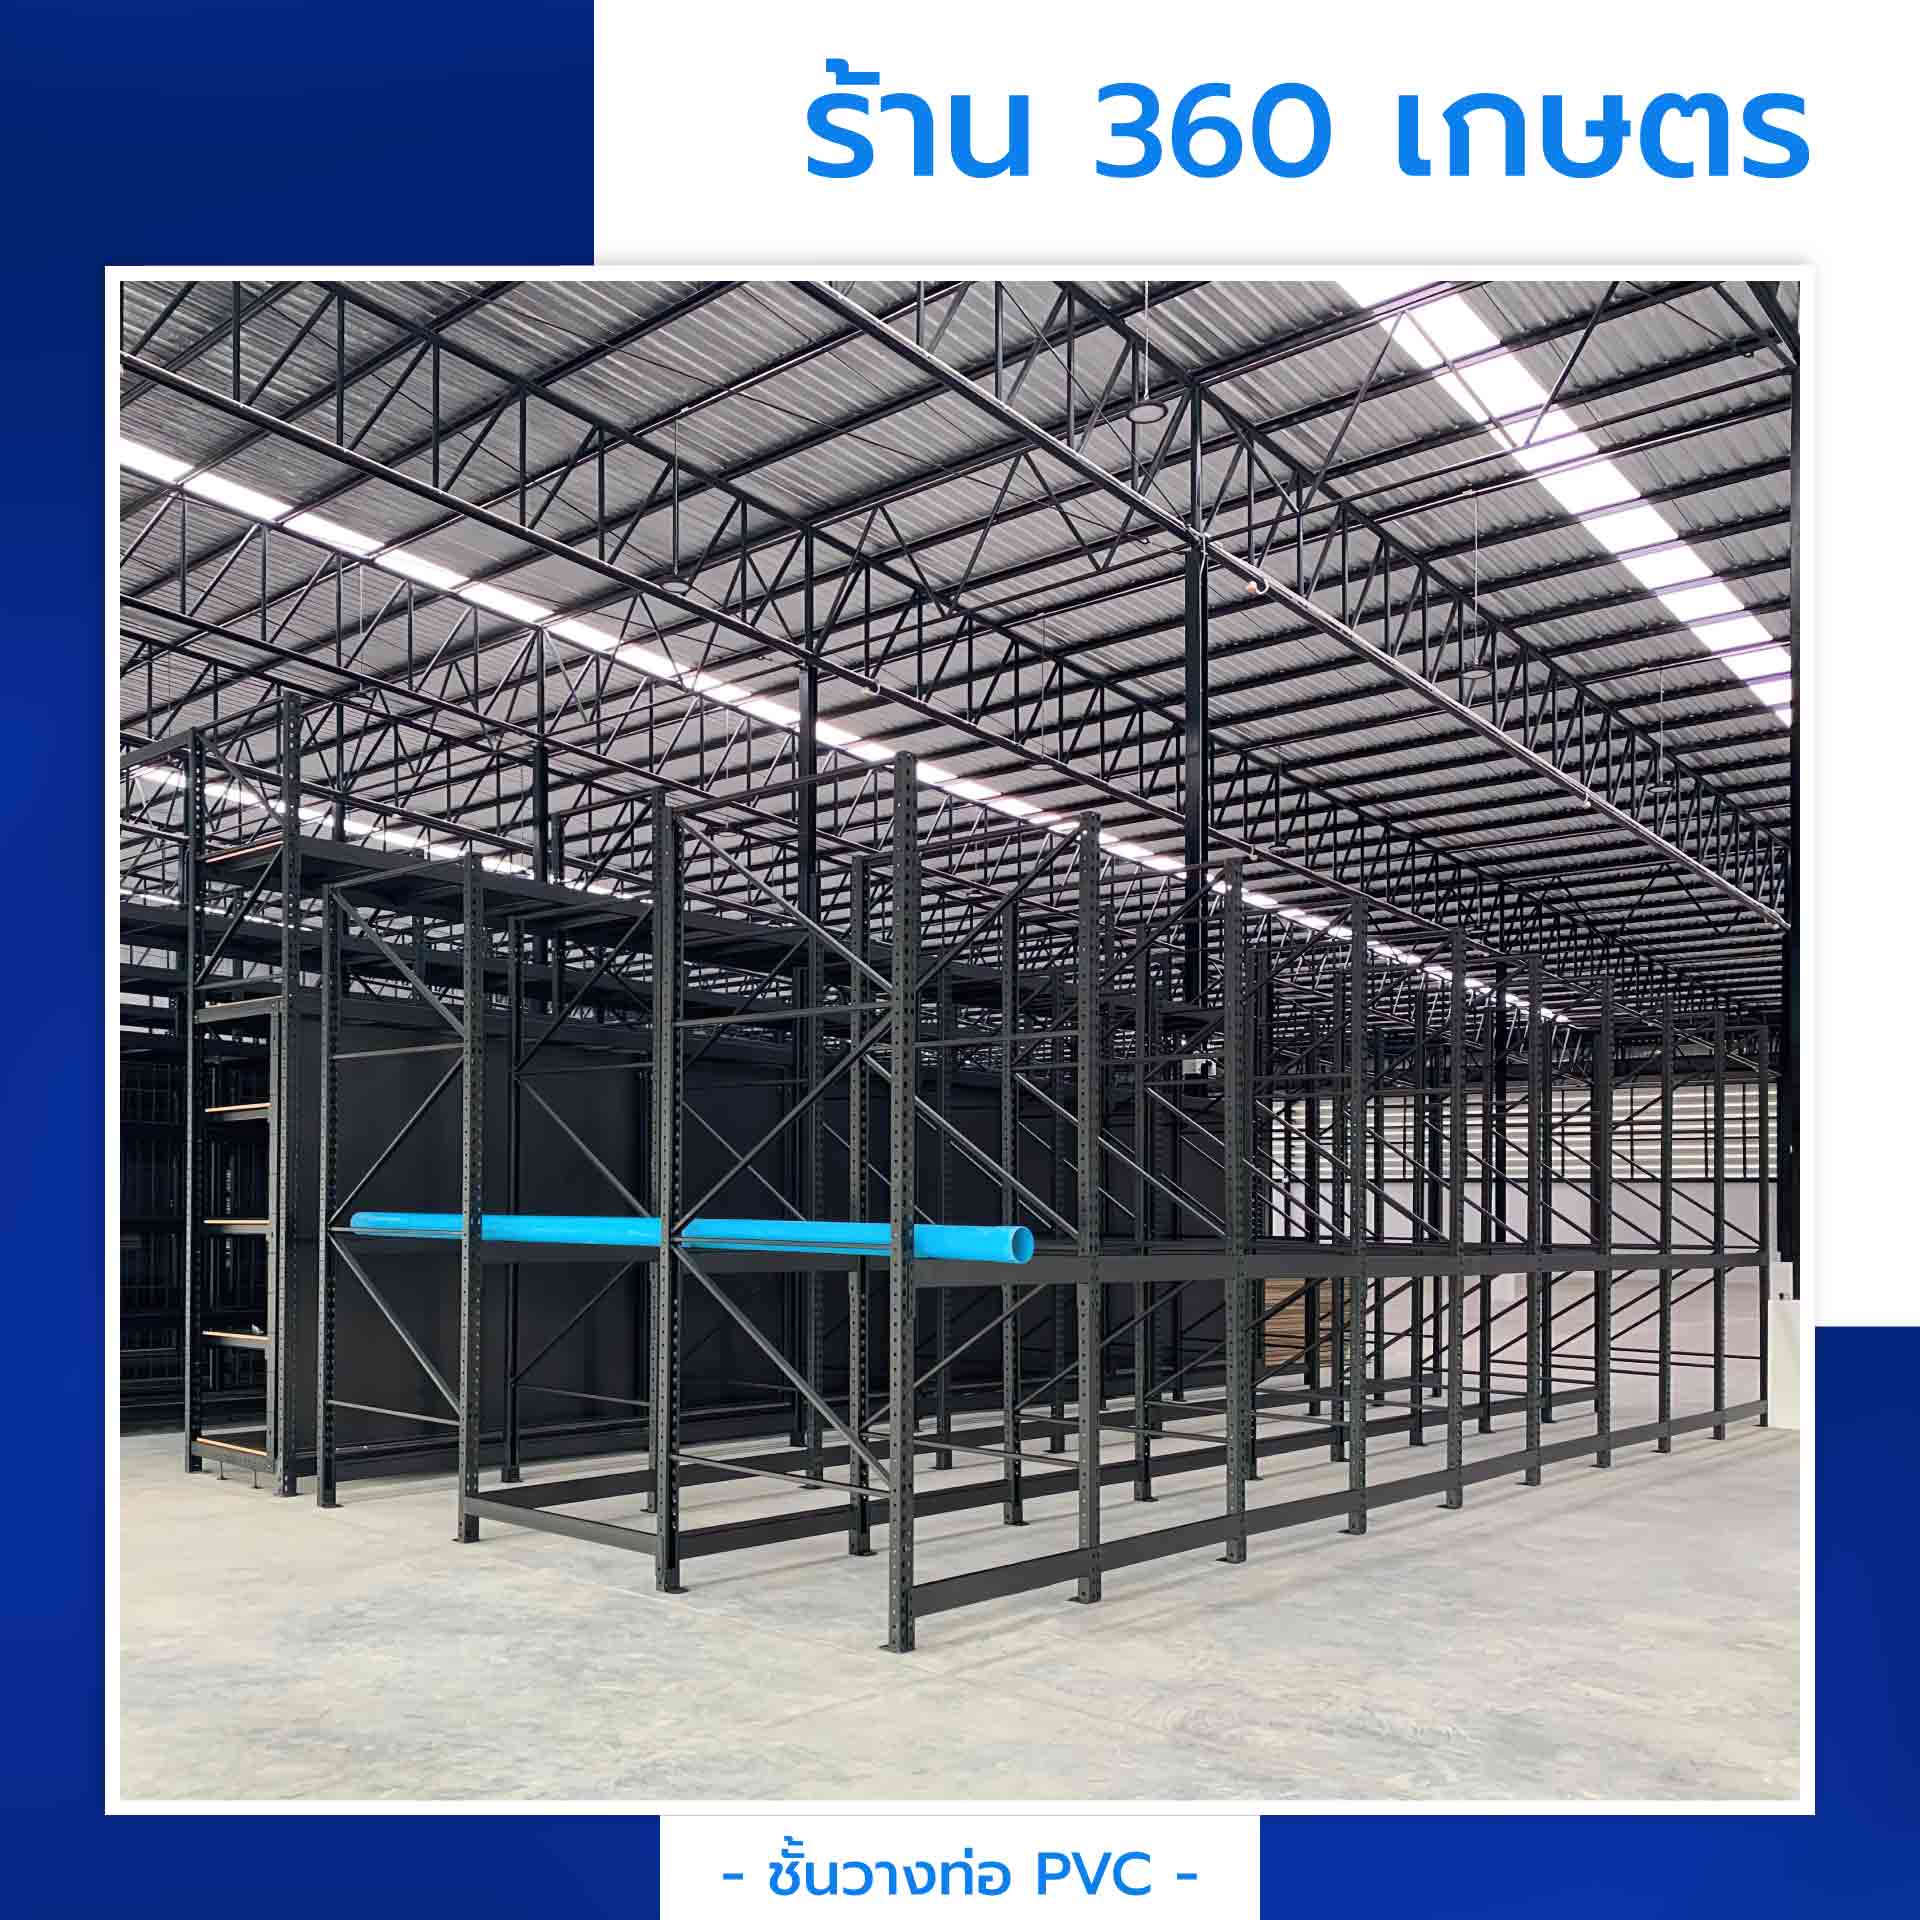 ชั้นวางท่อ PVC แบบยาว ร้าน 360 เกษตร